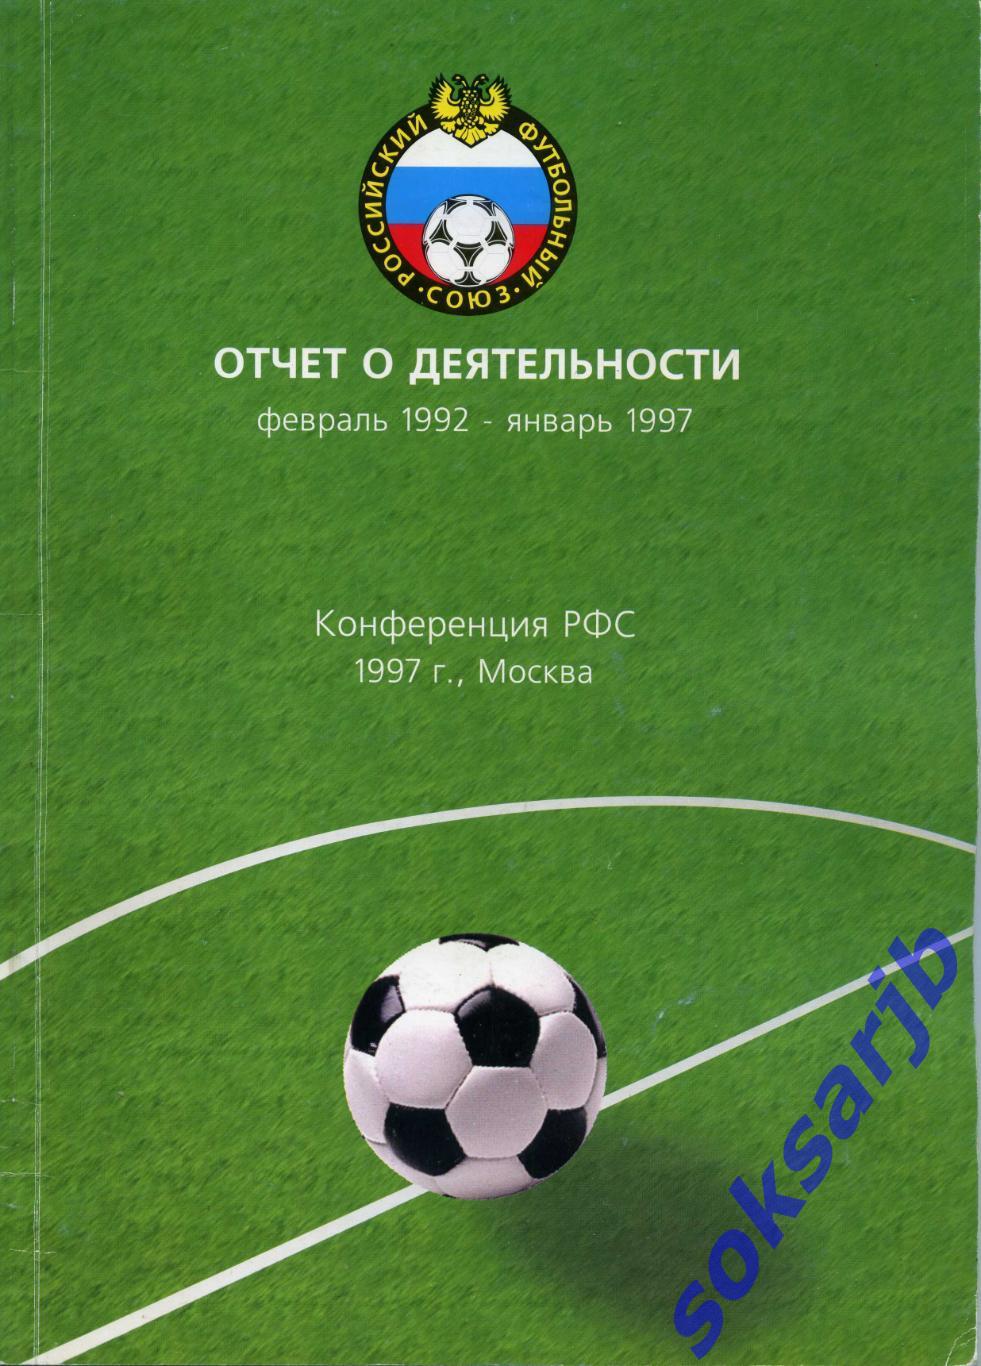 1997. РФС. Отчет о деятельности (февраль 1992 - январь 1997).